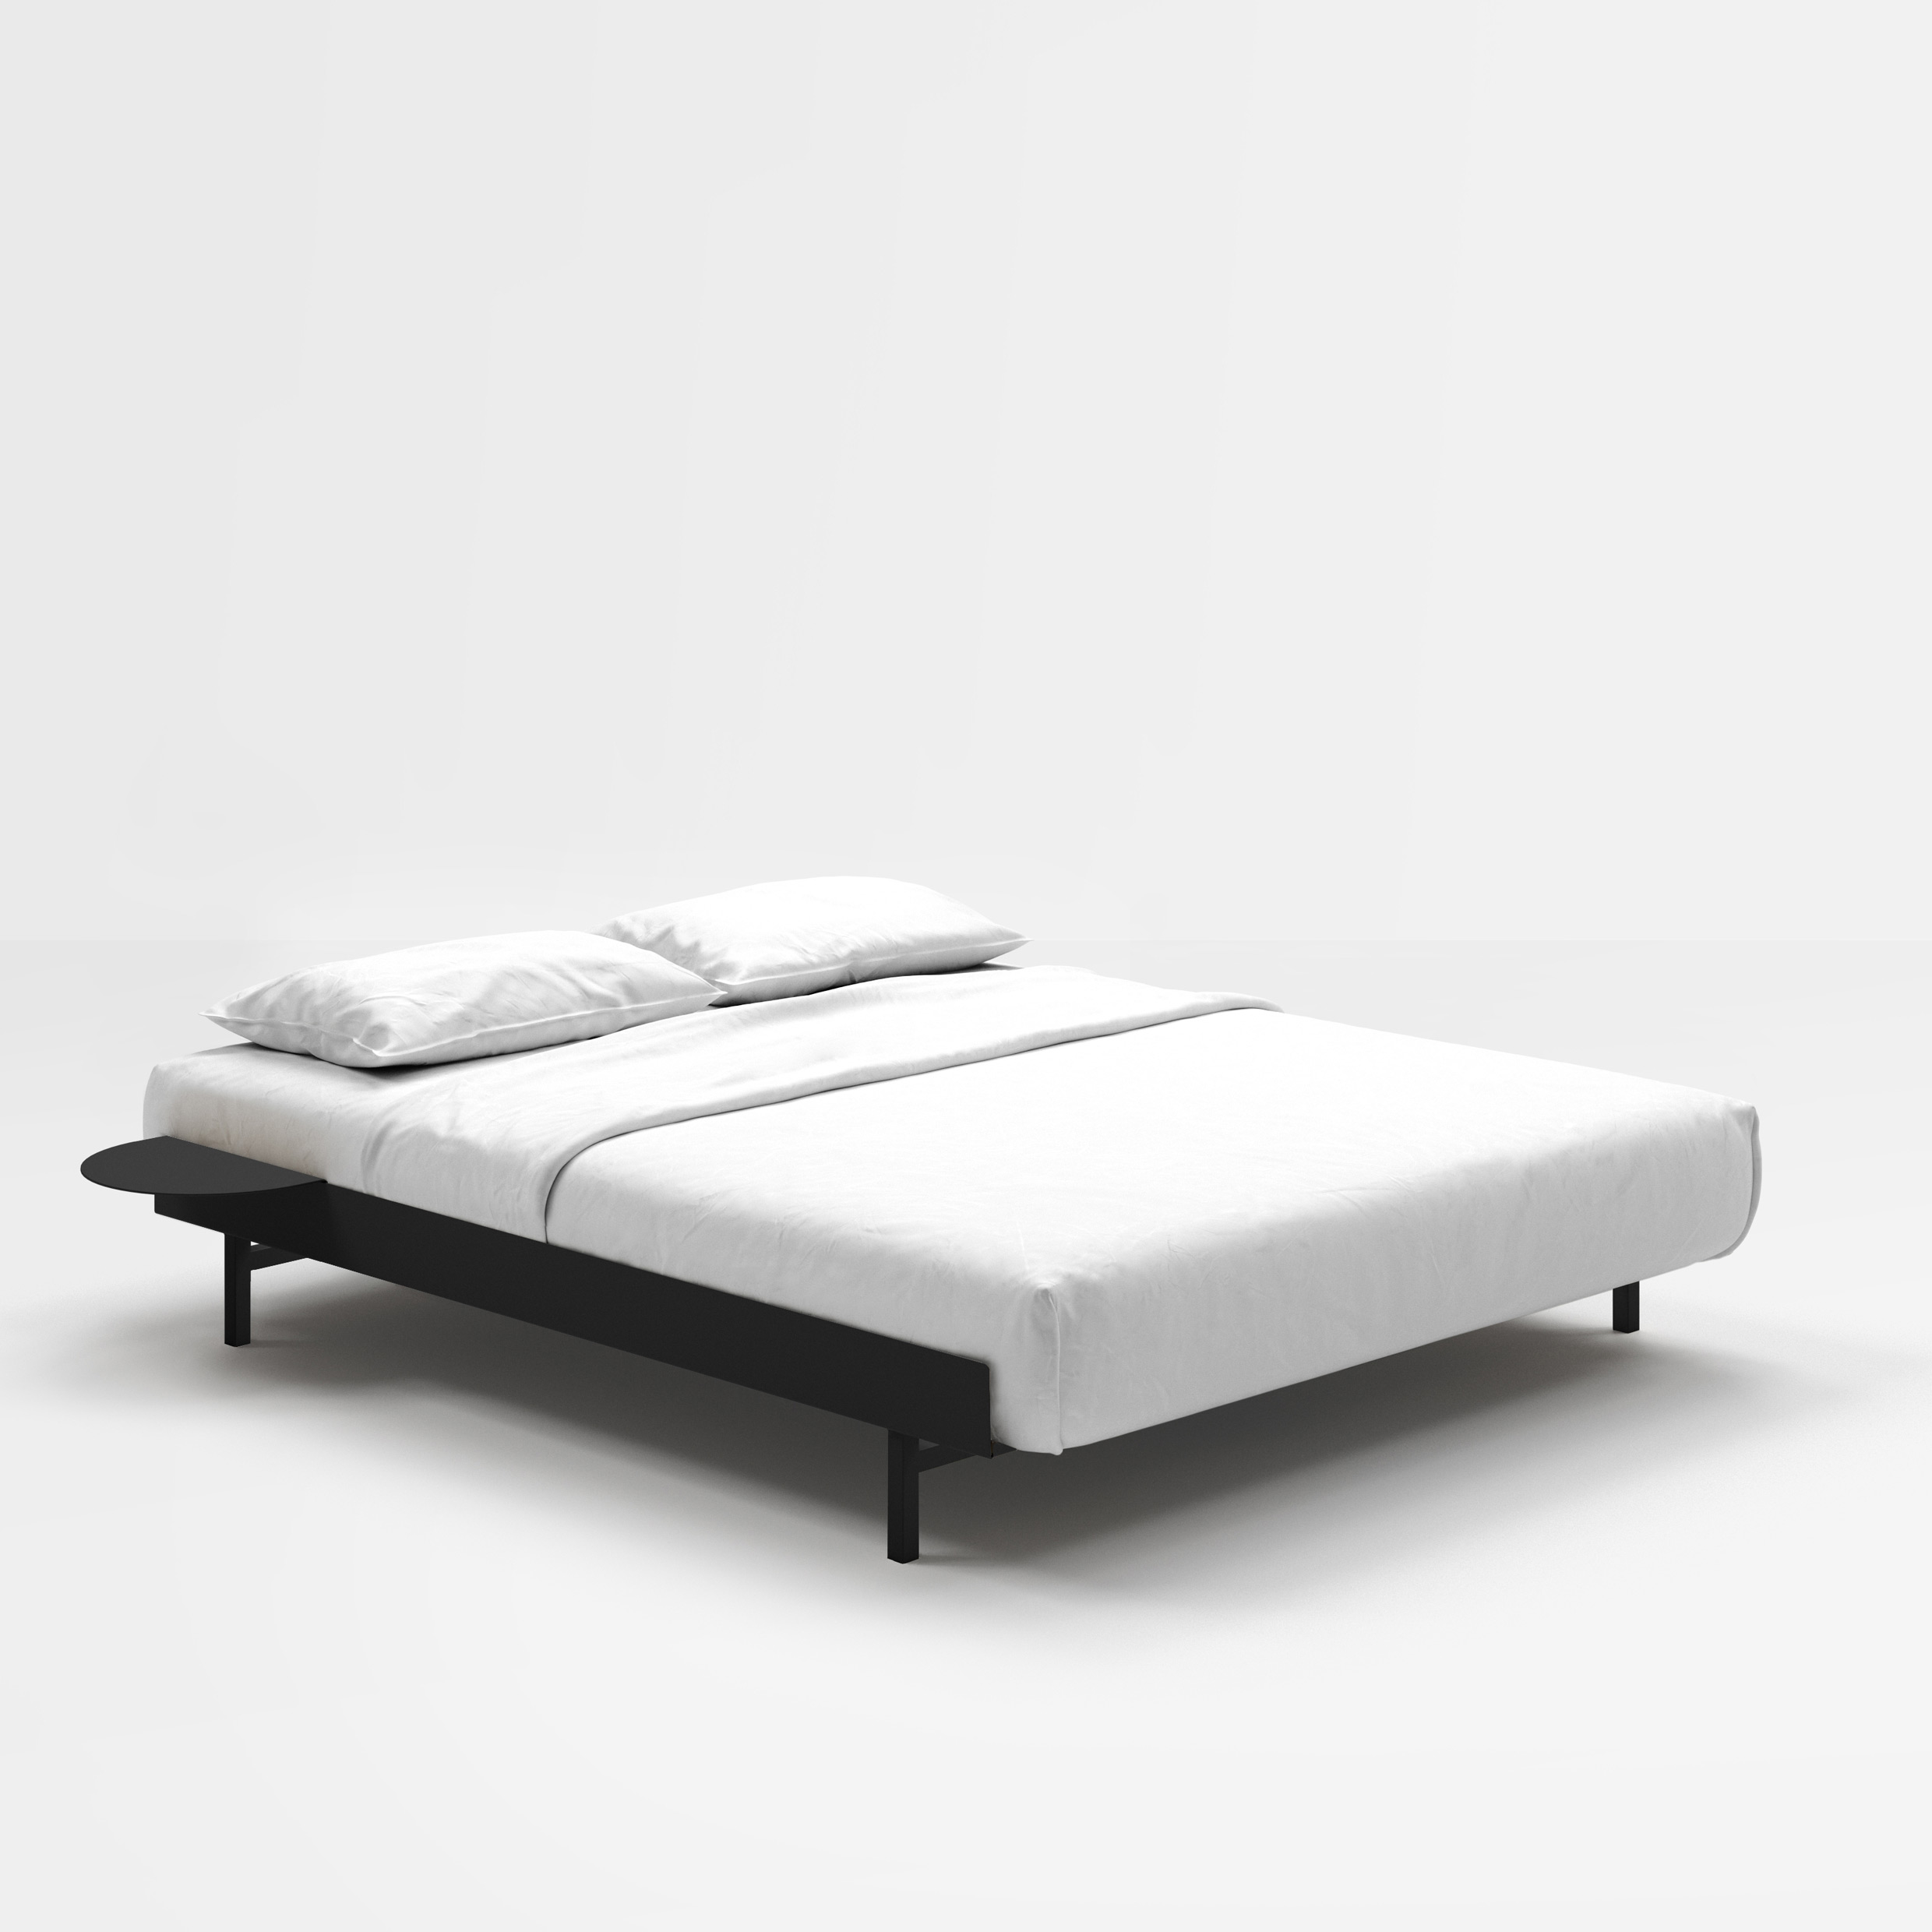 MOEBE // BED - 160 CM | INKL. SLATS + 2x SIDE TABLE | STEEL | BLACK